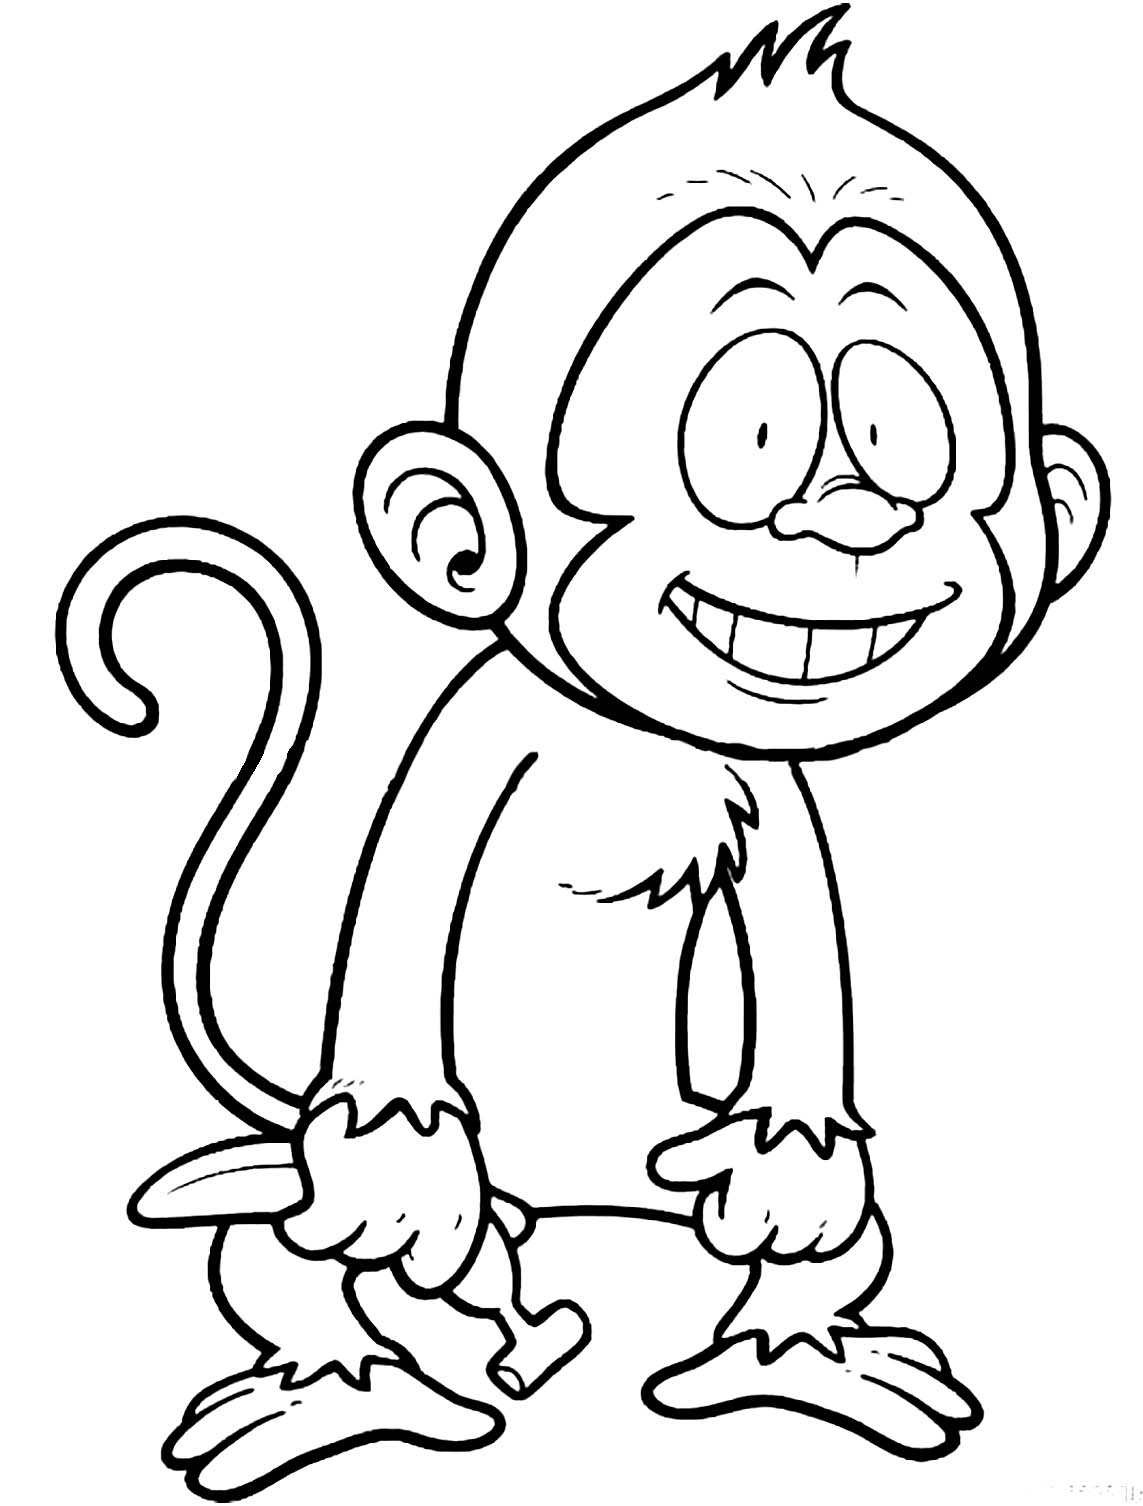 Tranh vẽ con khỉ chưa tô màu